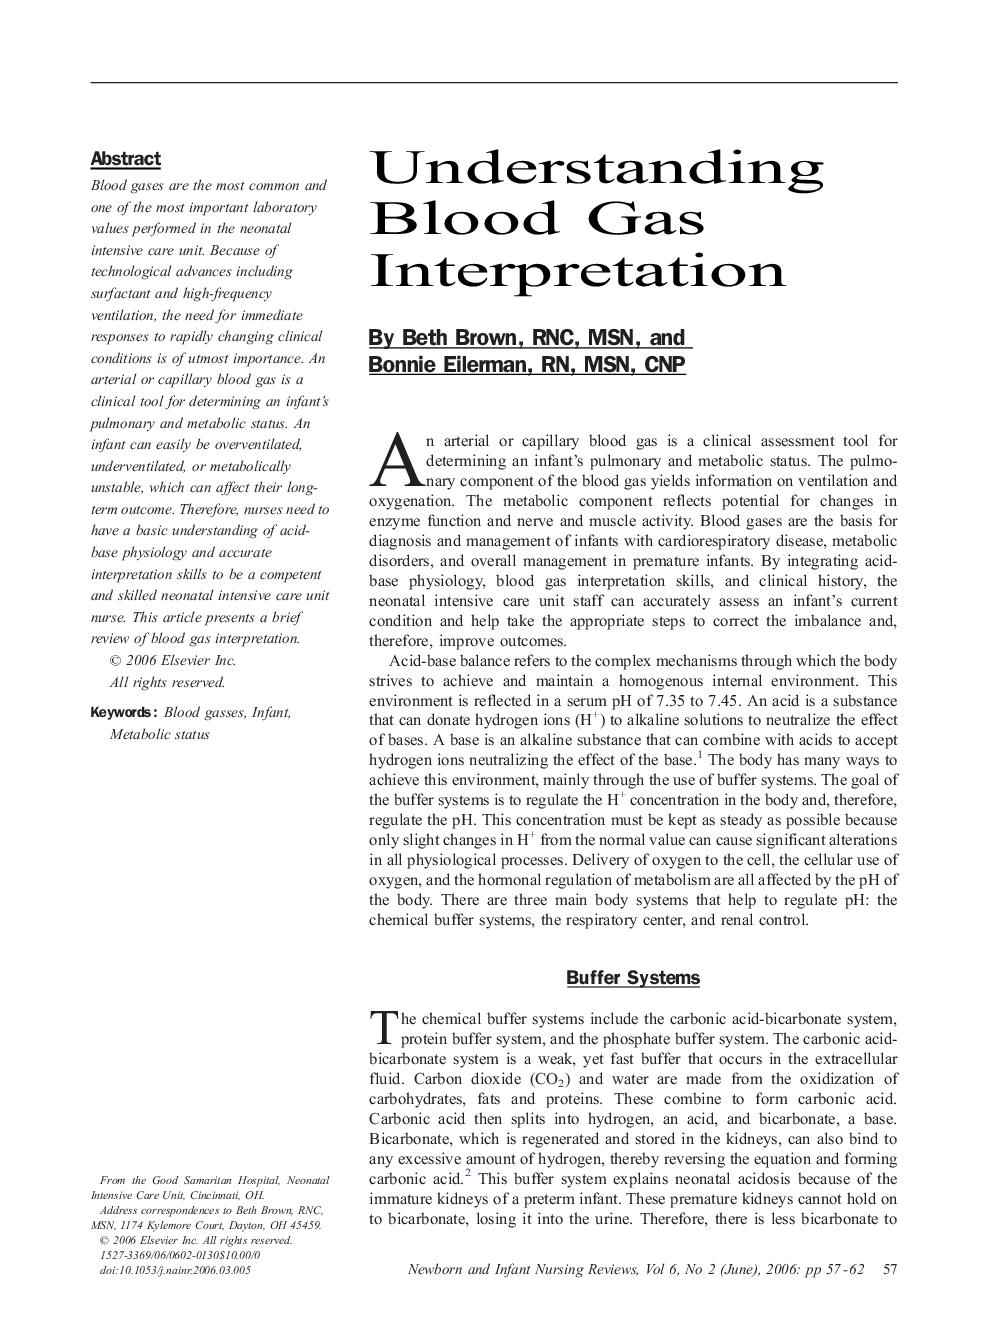 Understanding Blood Gas Interpretation